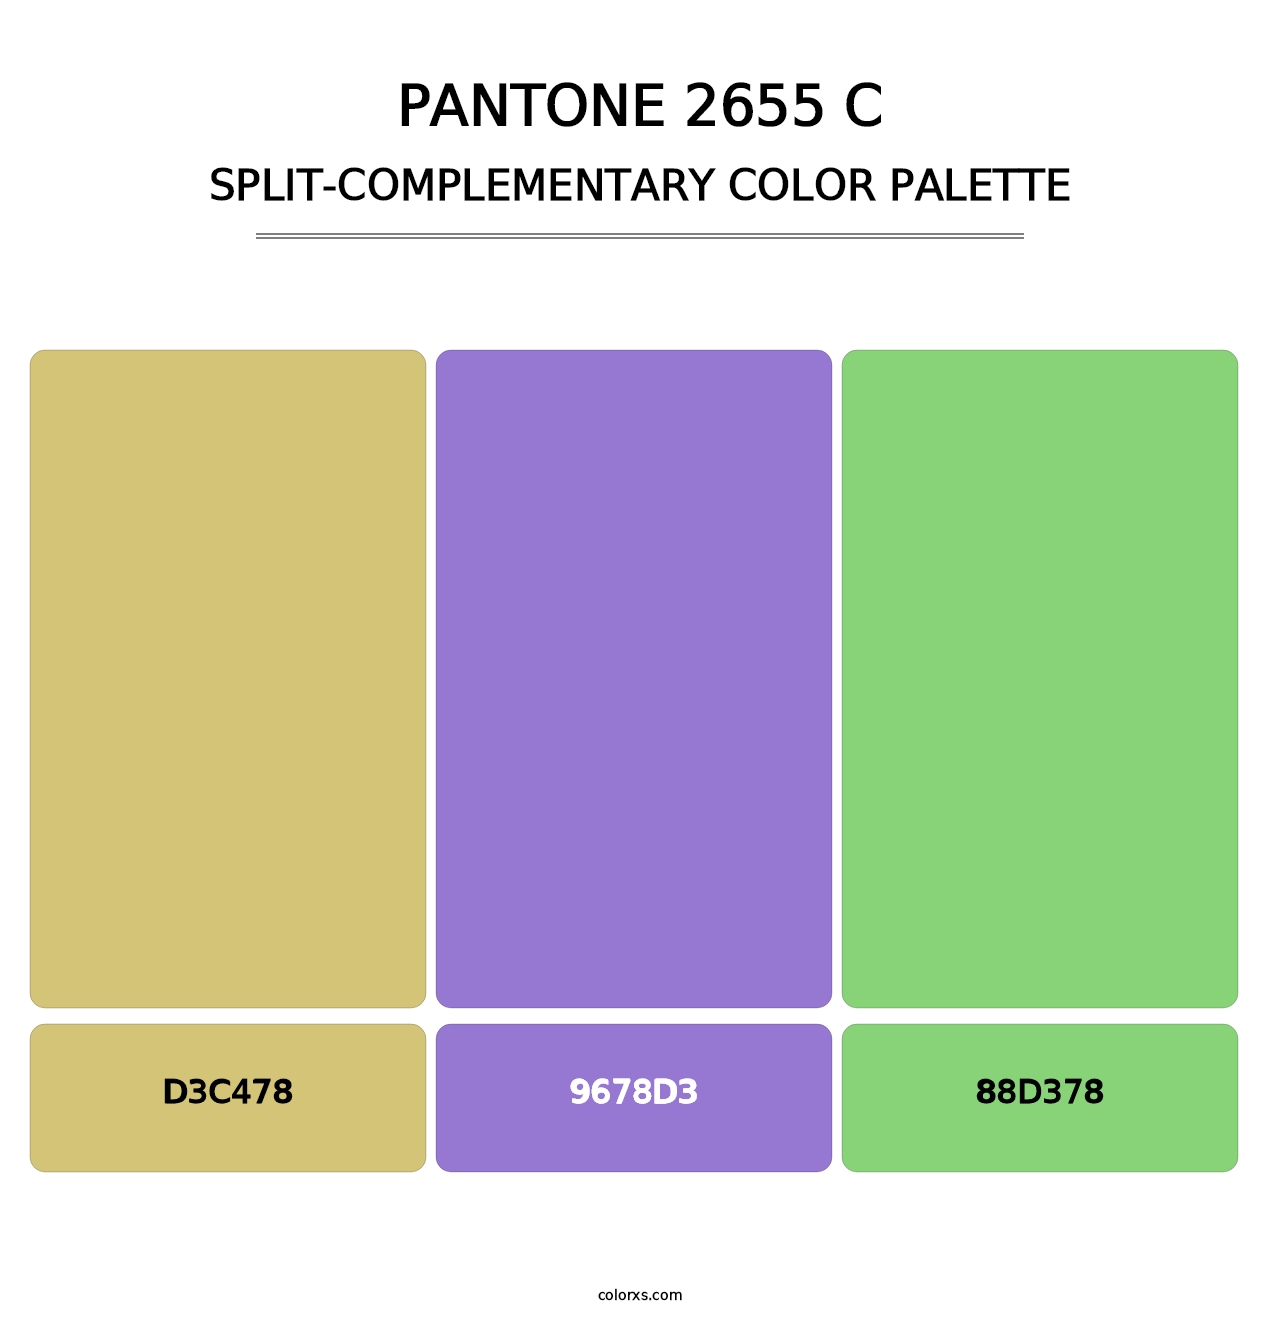 PANTONE 2655 C - Split-Complementary Color Palette